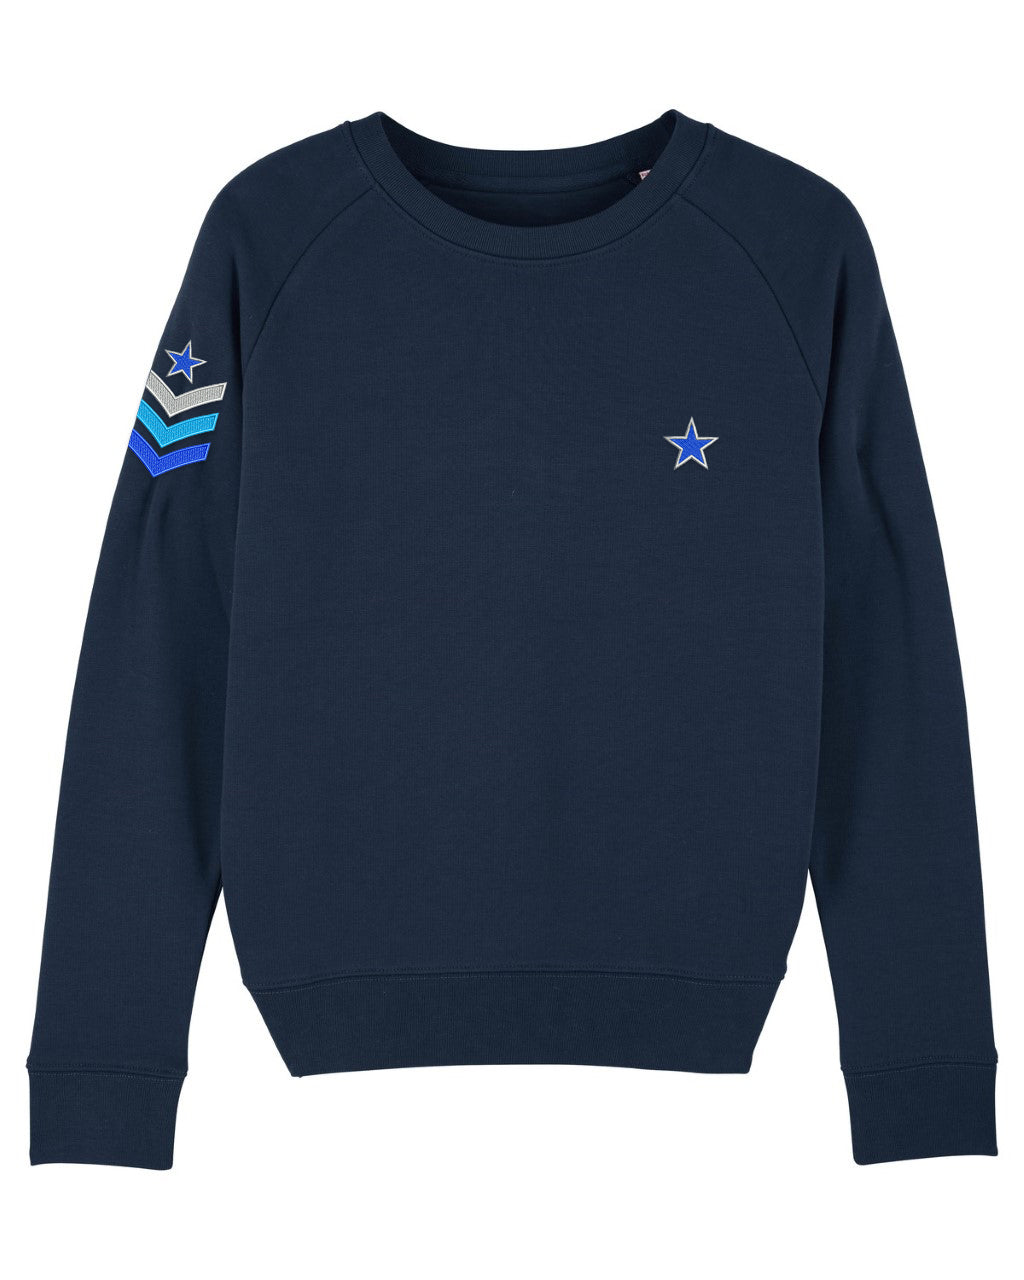 Navy Military Sweatshirt